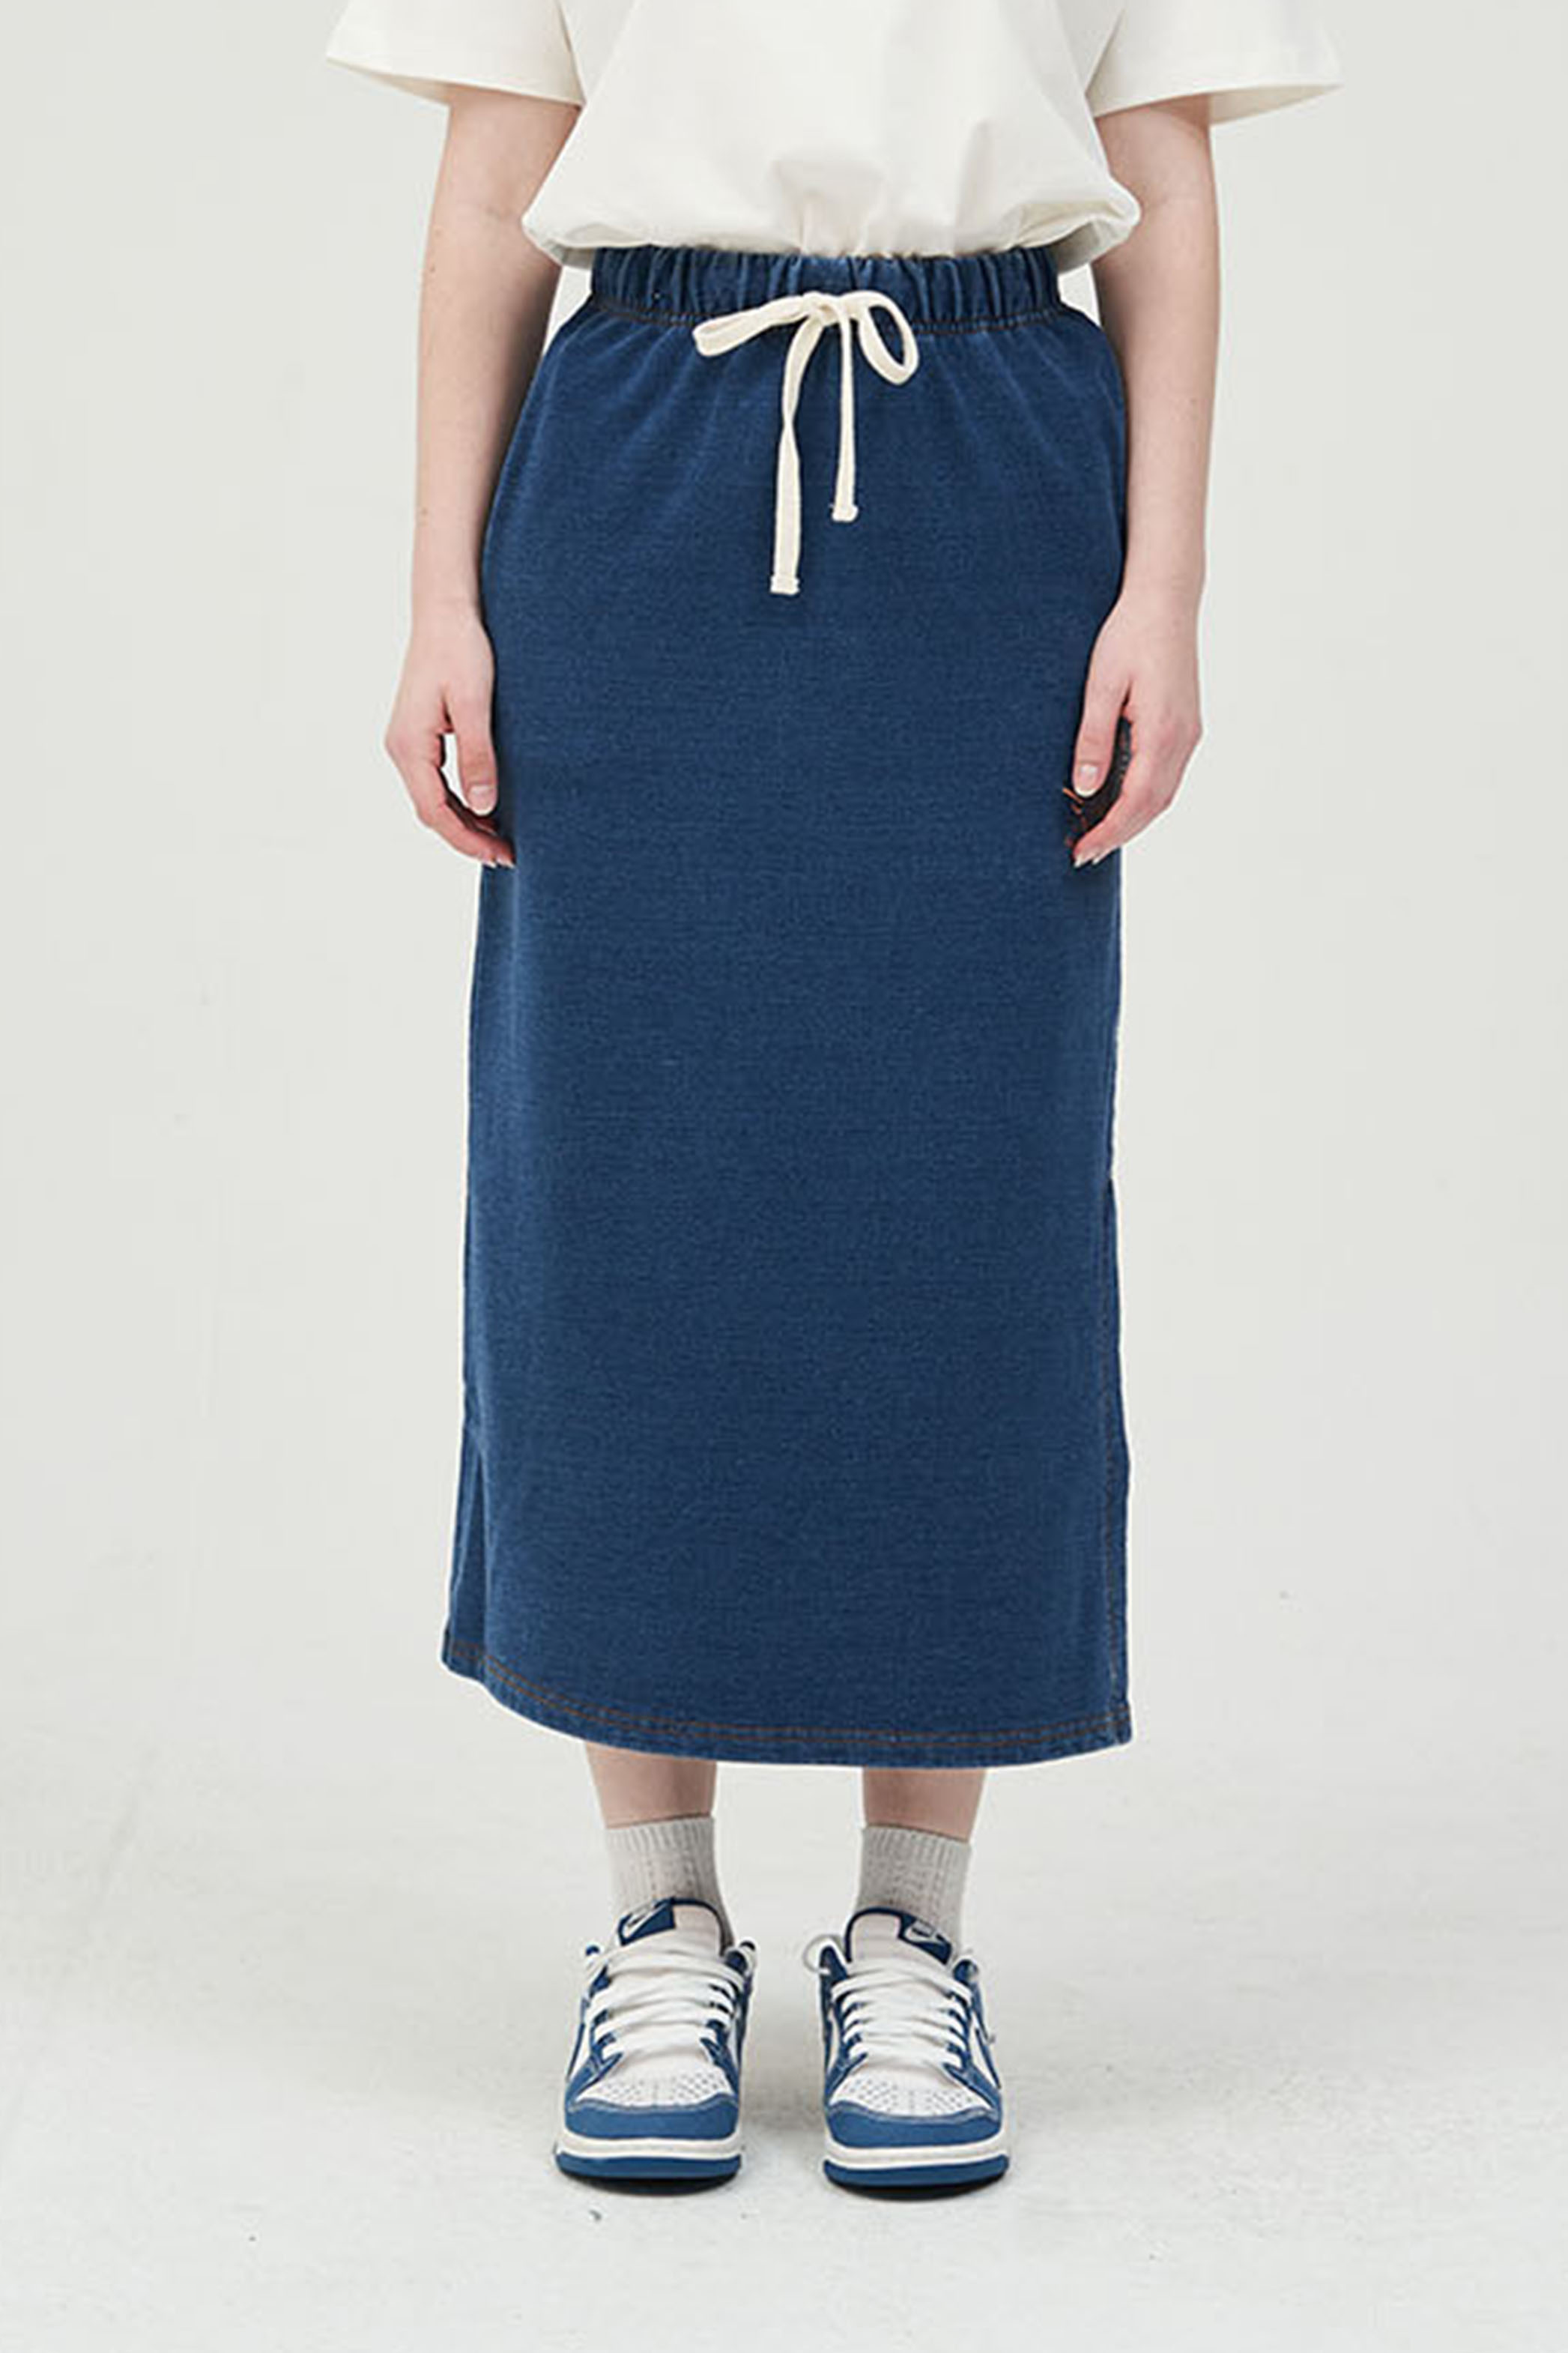 Sunny-Side Up Racket Denim Indigo Dyed Skirts